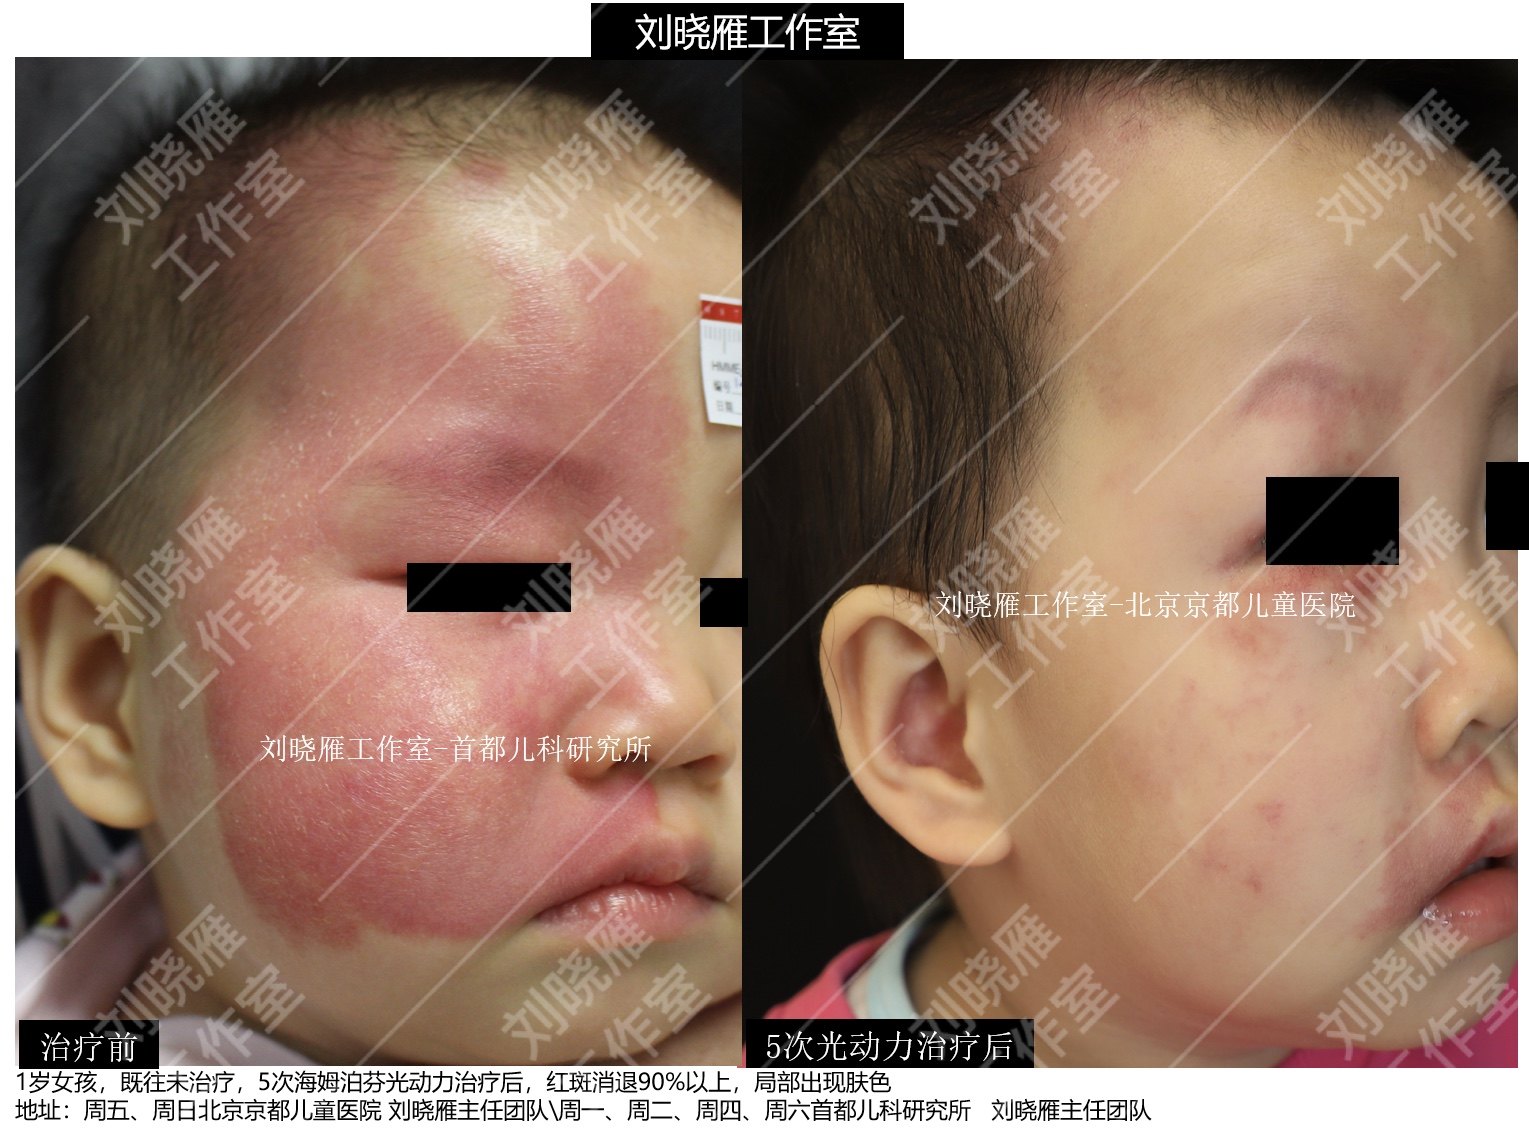 海姆泊芬光动力治疗鲜红斑痣儿童病例展示图片 - 好大夫在线